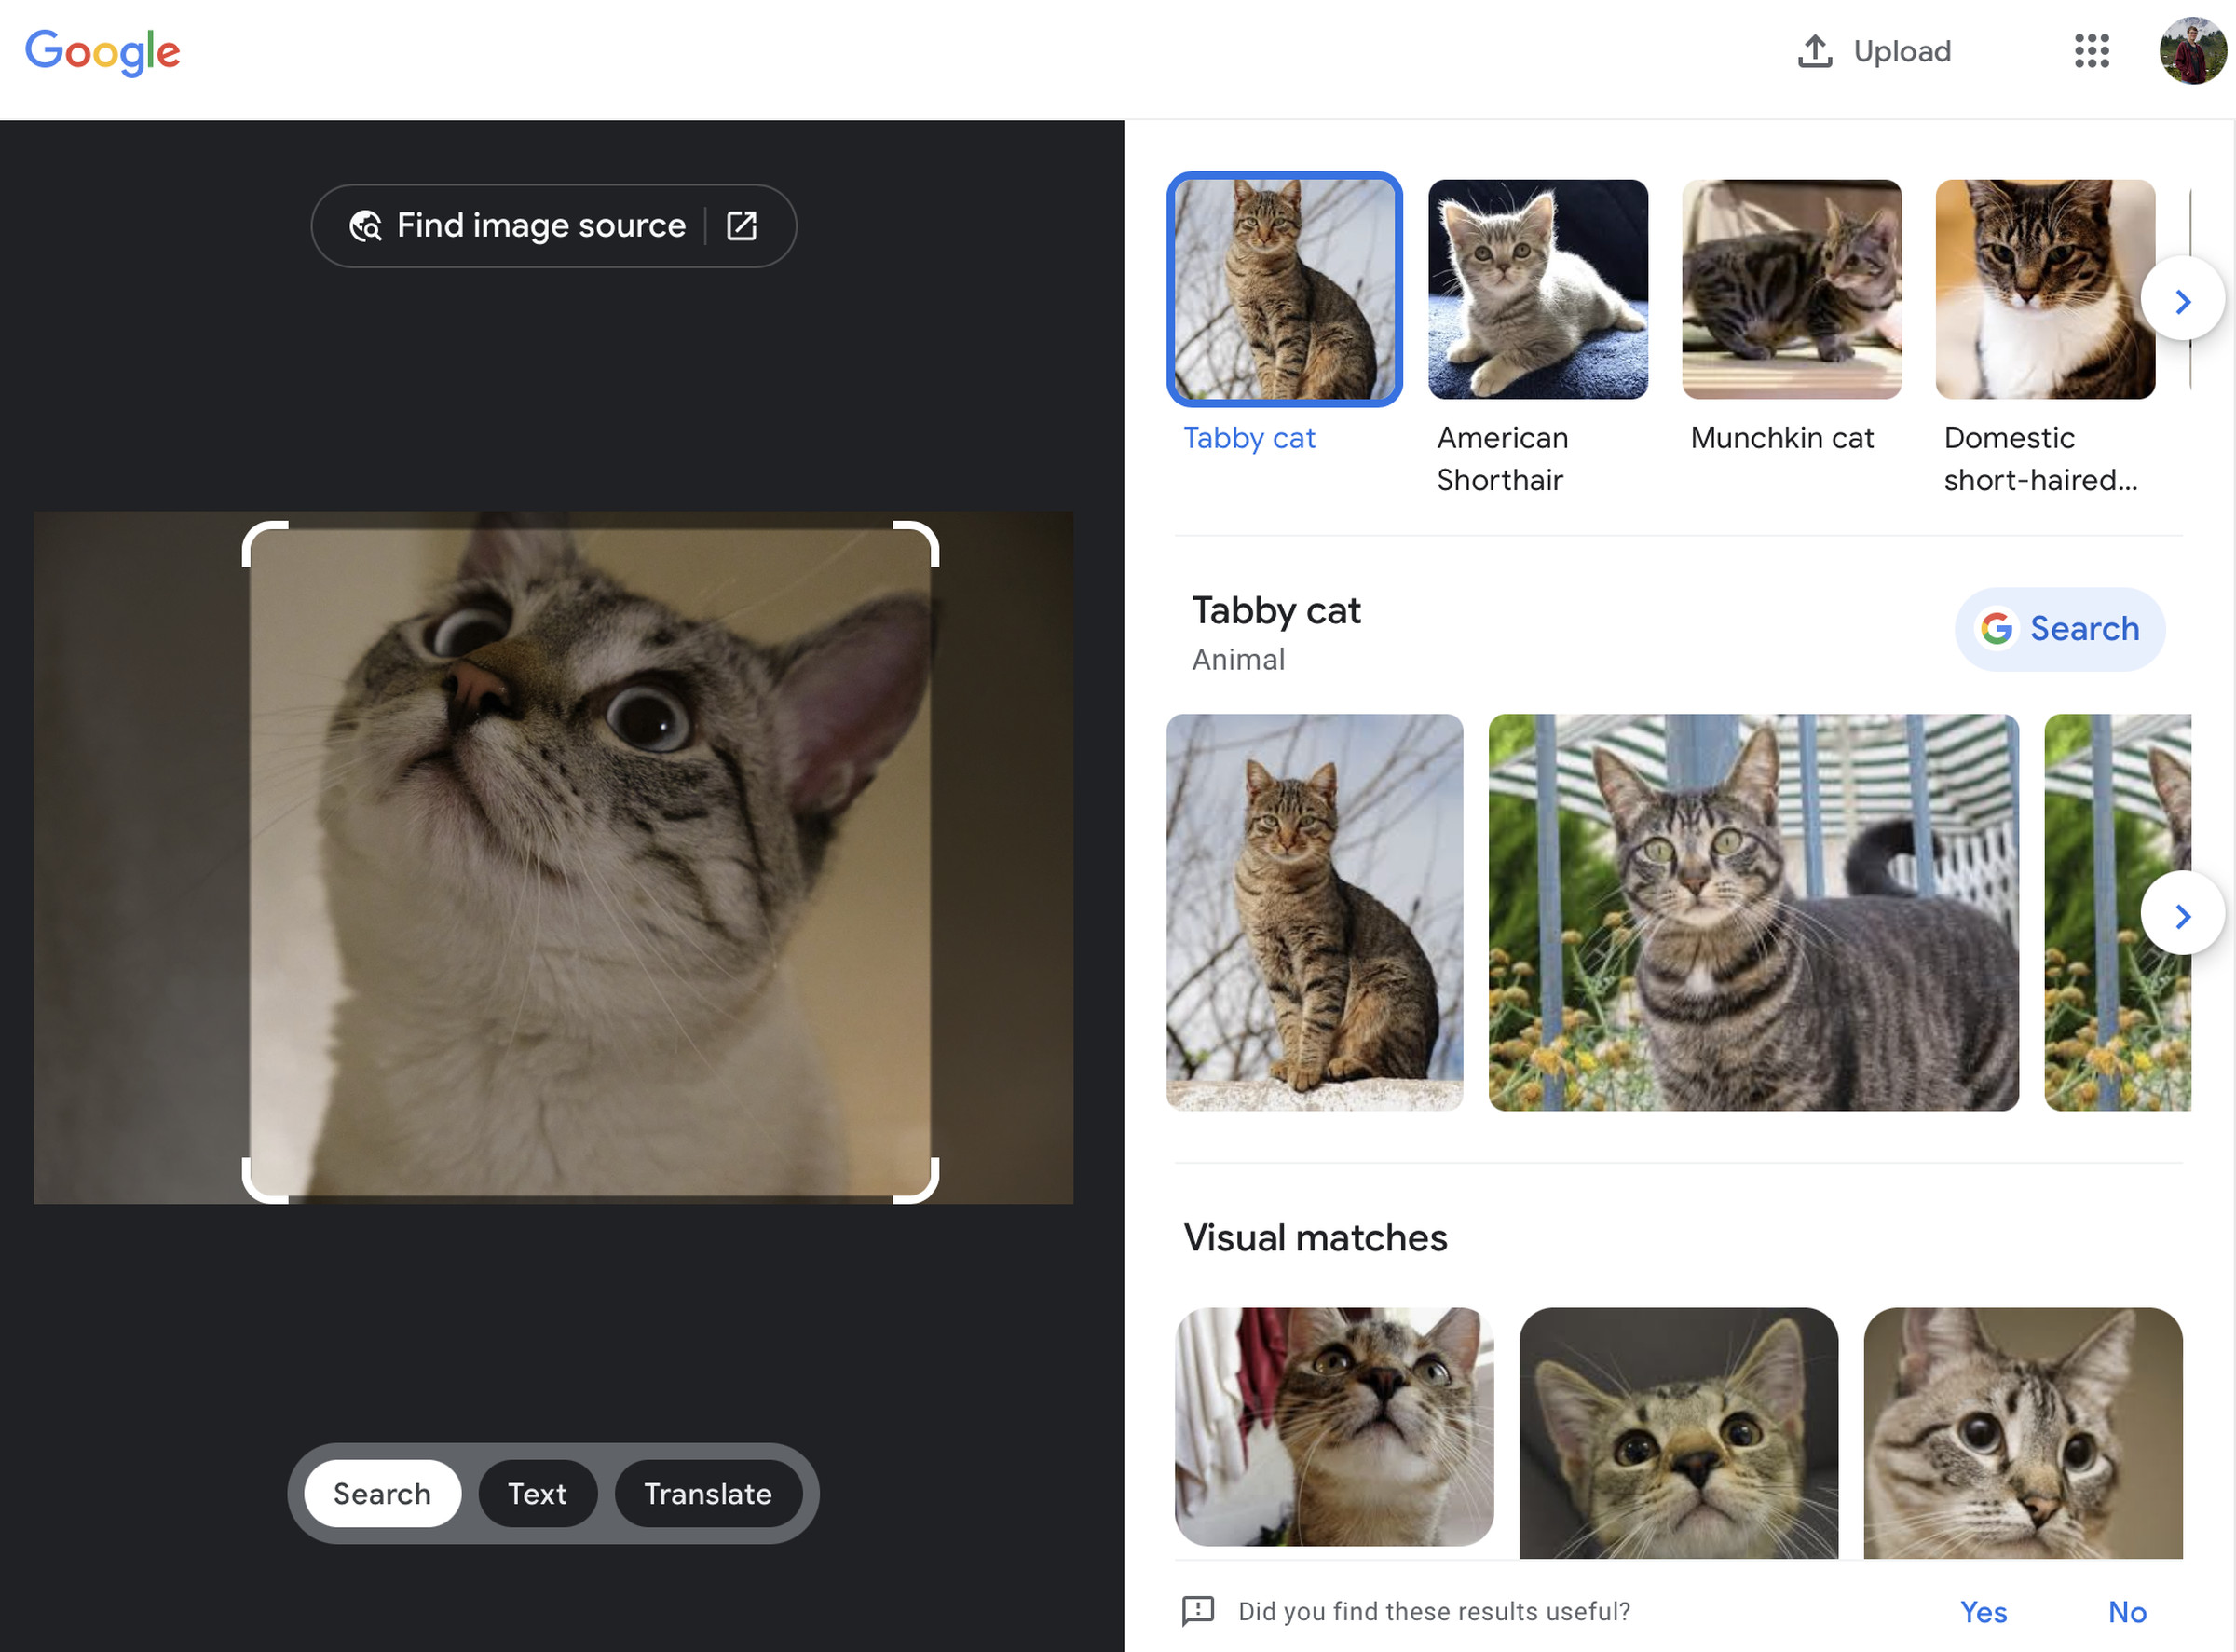 Captura de pantalla de Google Lens escaneando una imagen de un gato y mostrando resultados de búsqueda e imágenes para otros gatos.